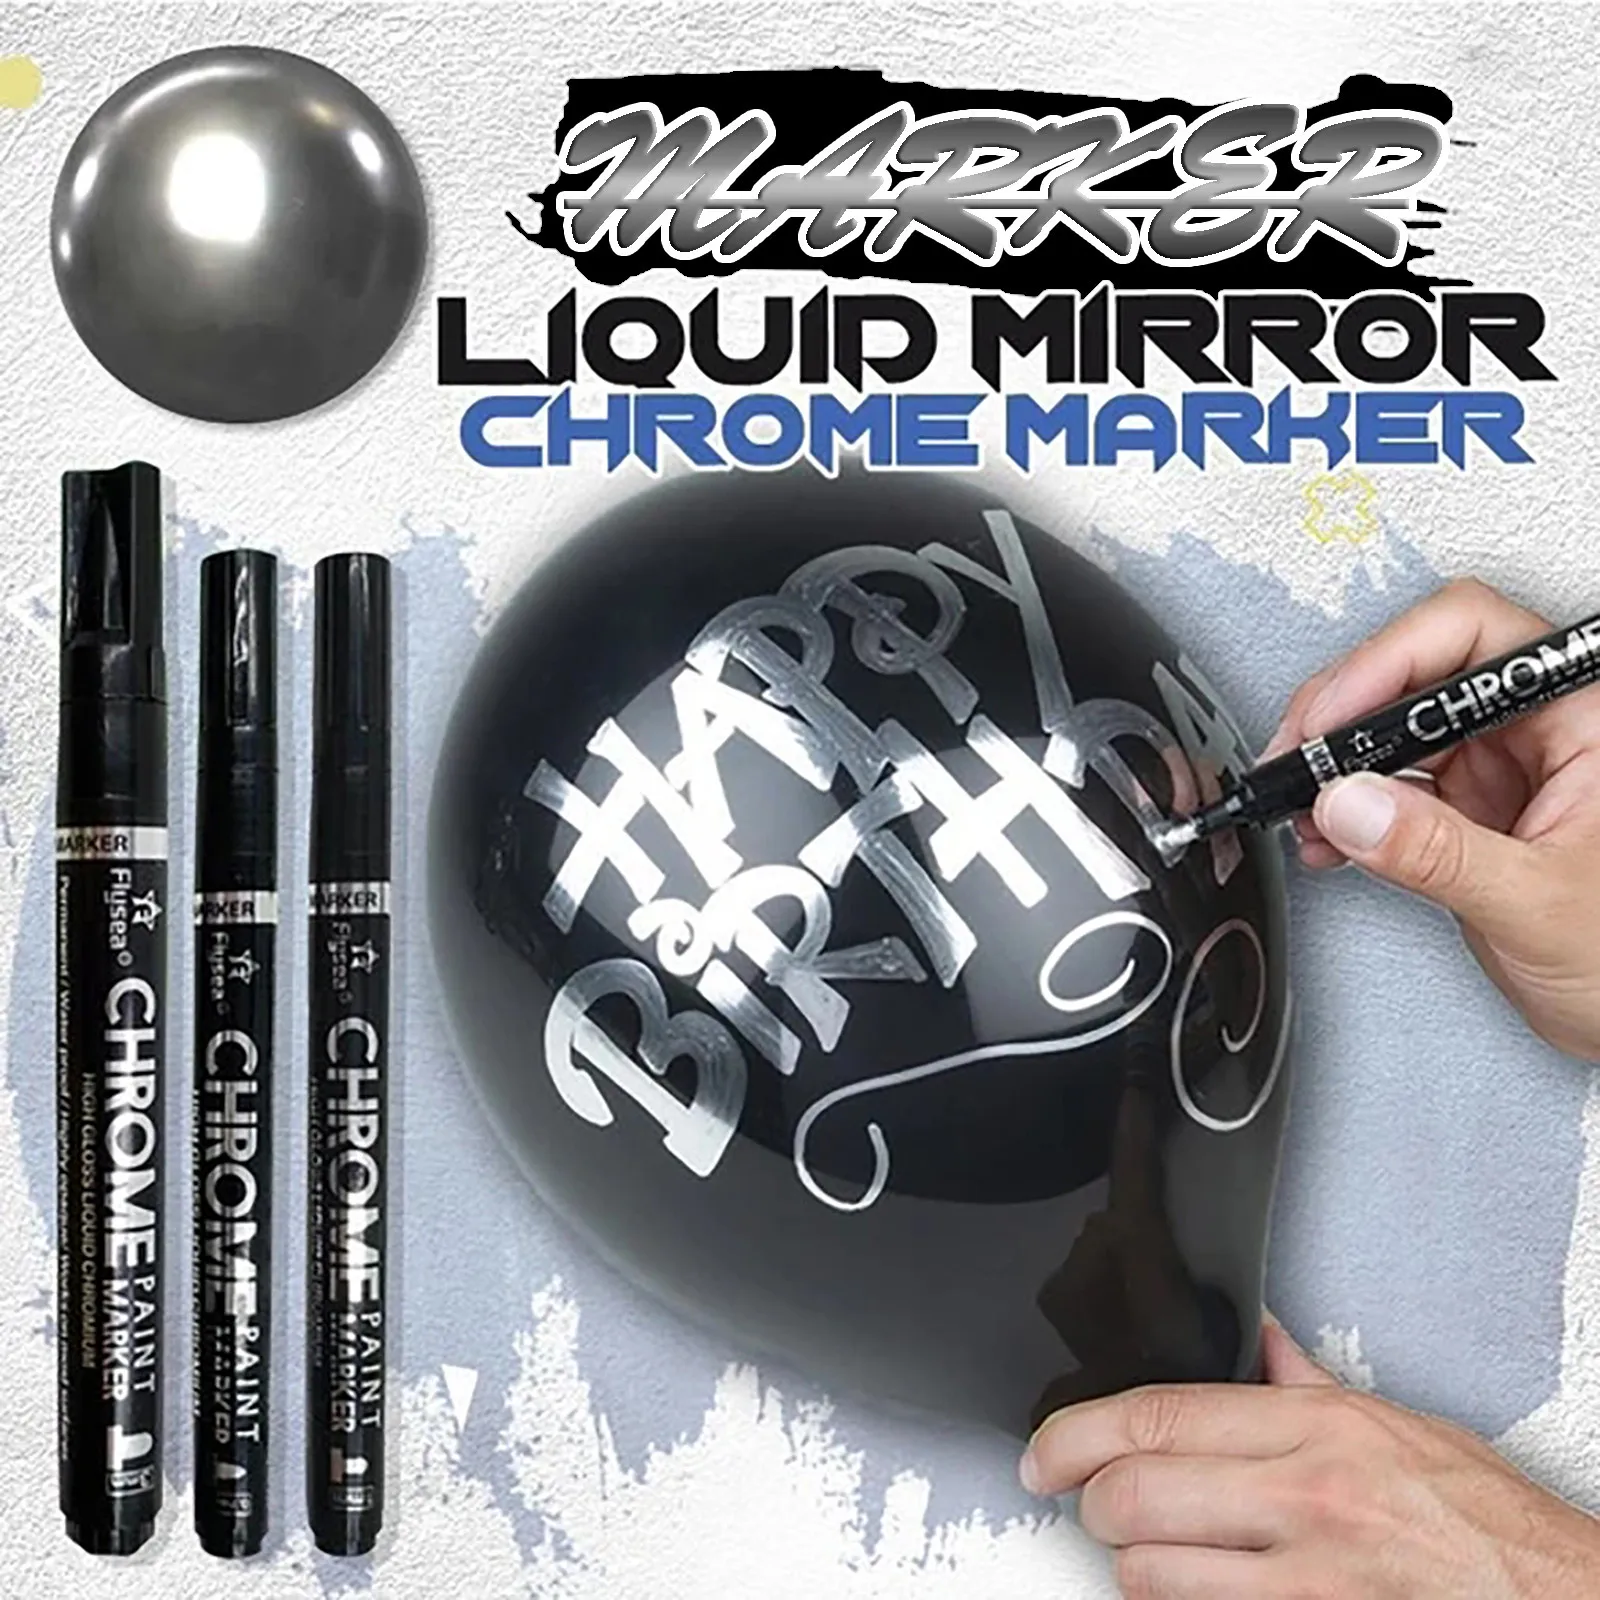 

Жидкий зеркальный хромированный маркер SilverArt, 5 мл, зеркальная ручка, светоотражающая ручка, художественные маркеры для офиса и школы, аксес...